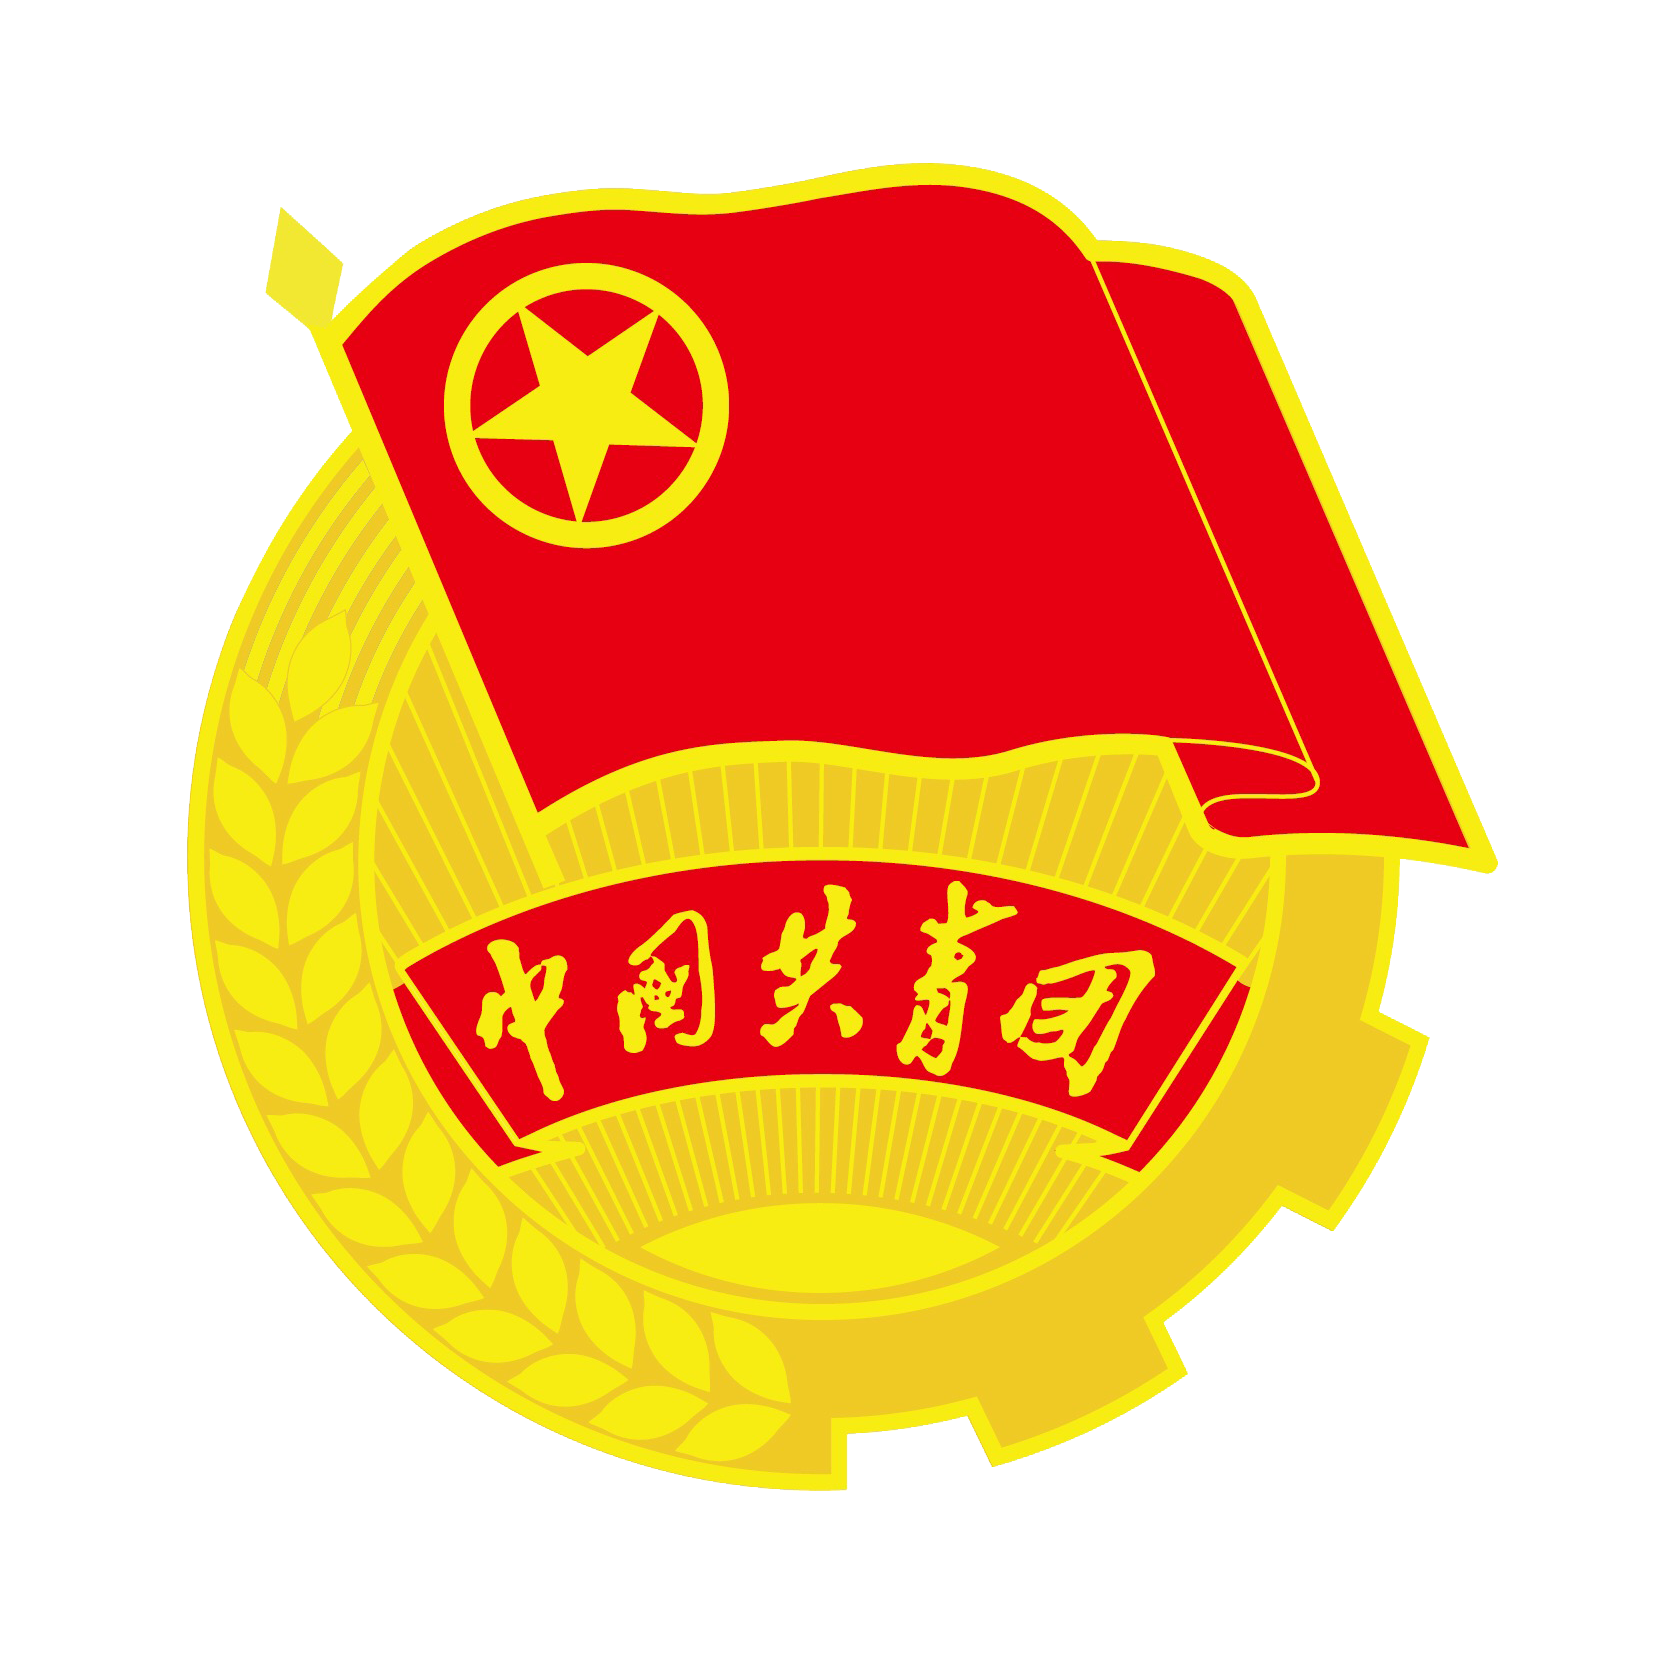 中國共產主義青年團中央委員會(團委)